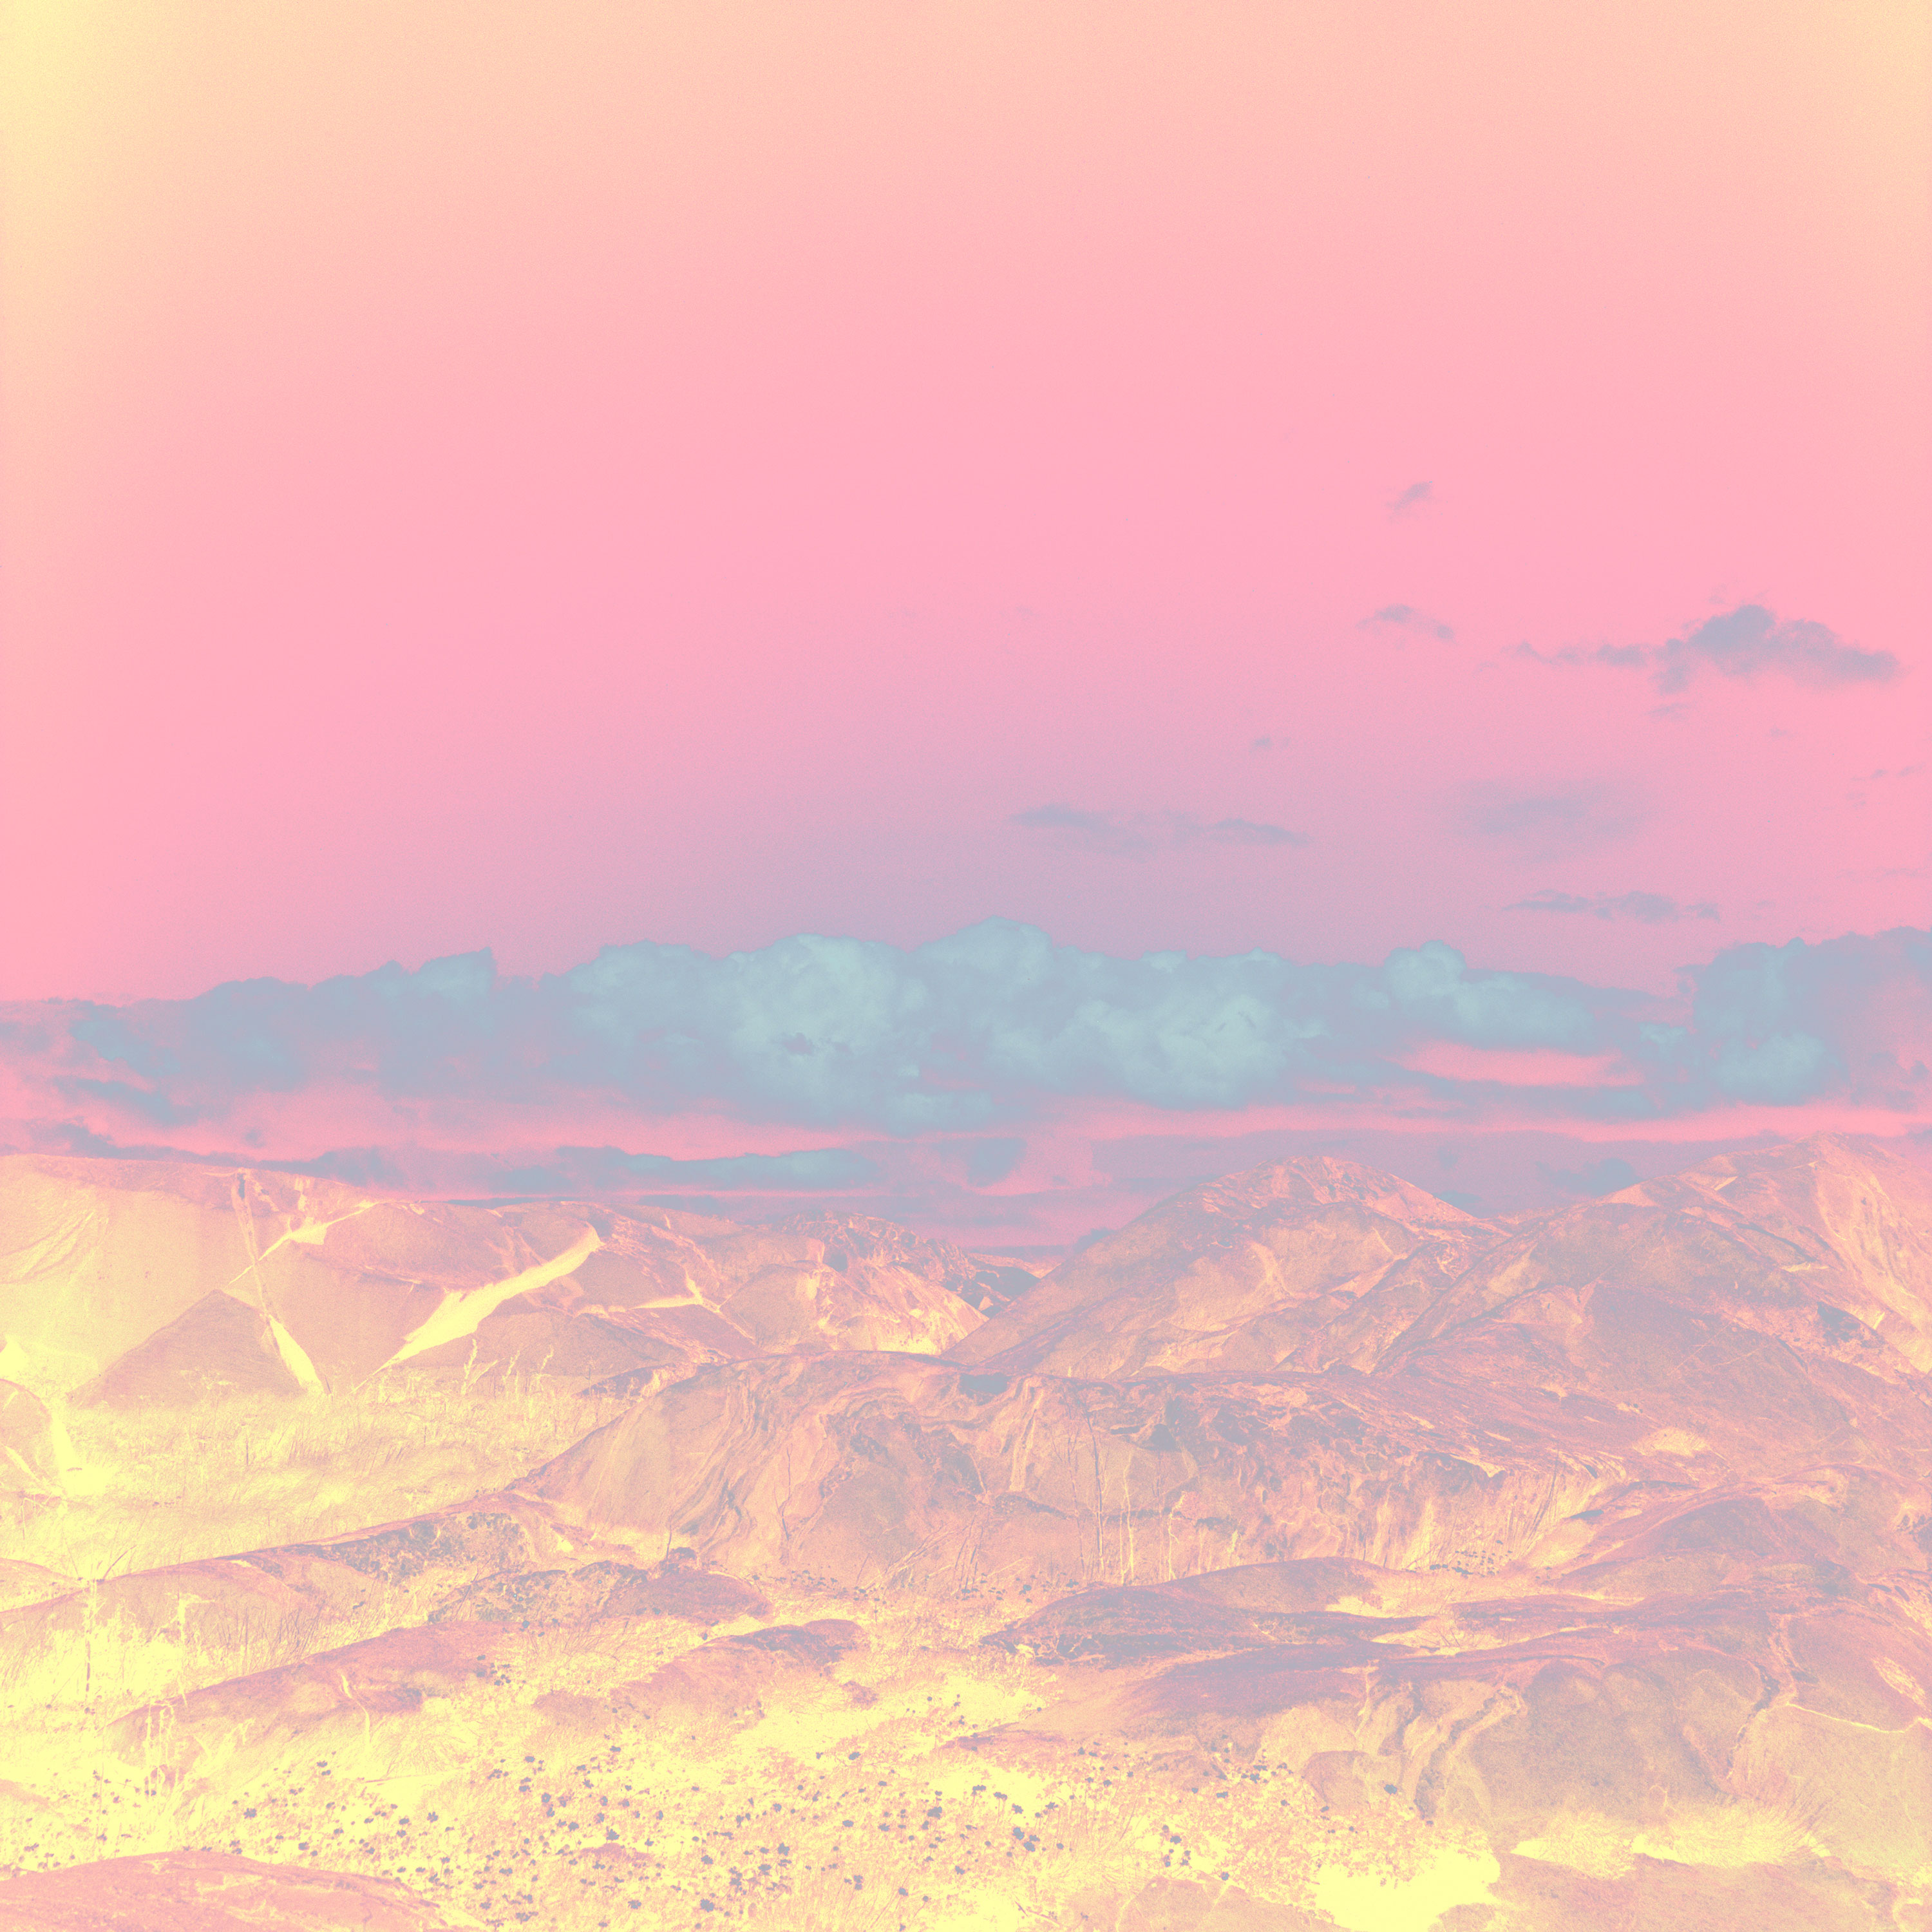 landskapsbild över hav och berg med förändrade färger i rosa och gult och orange